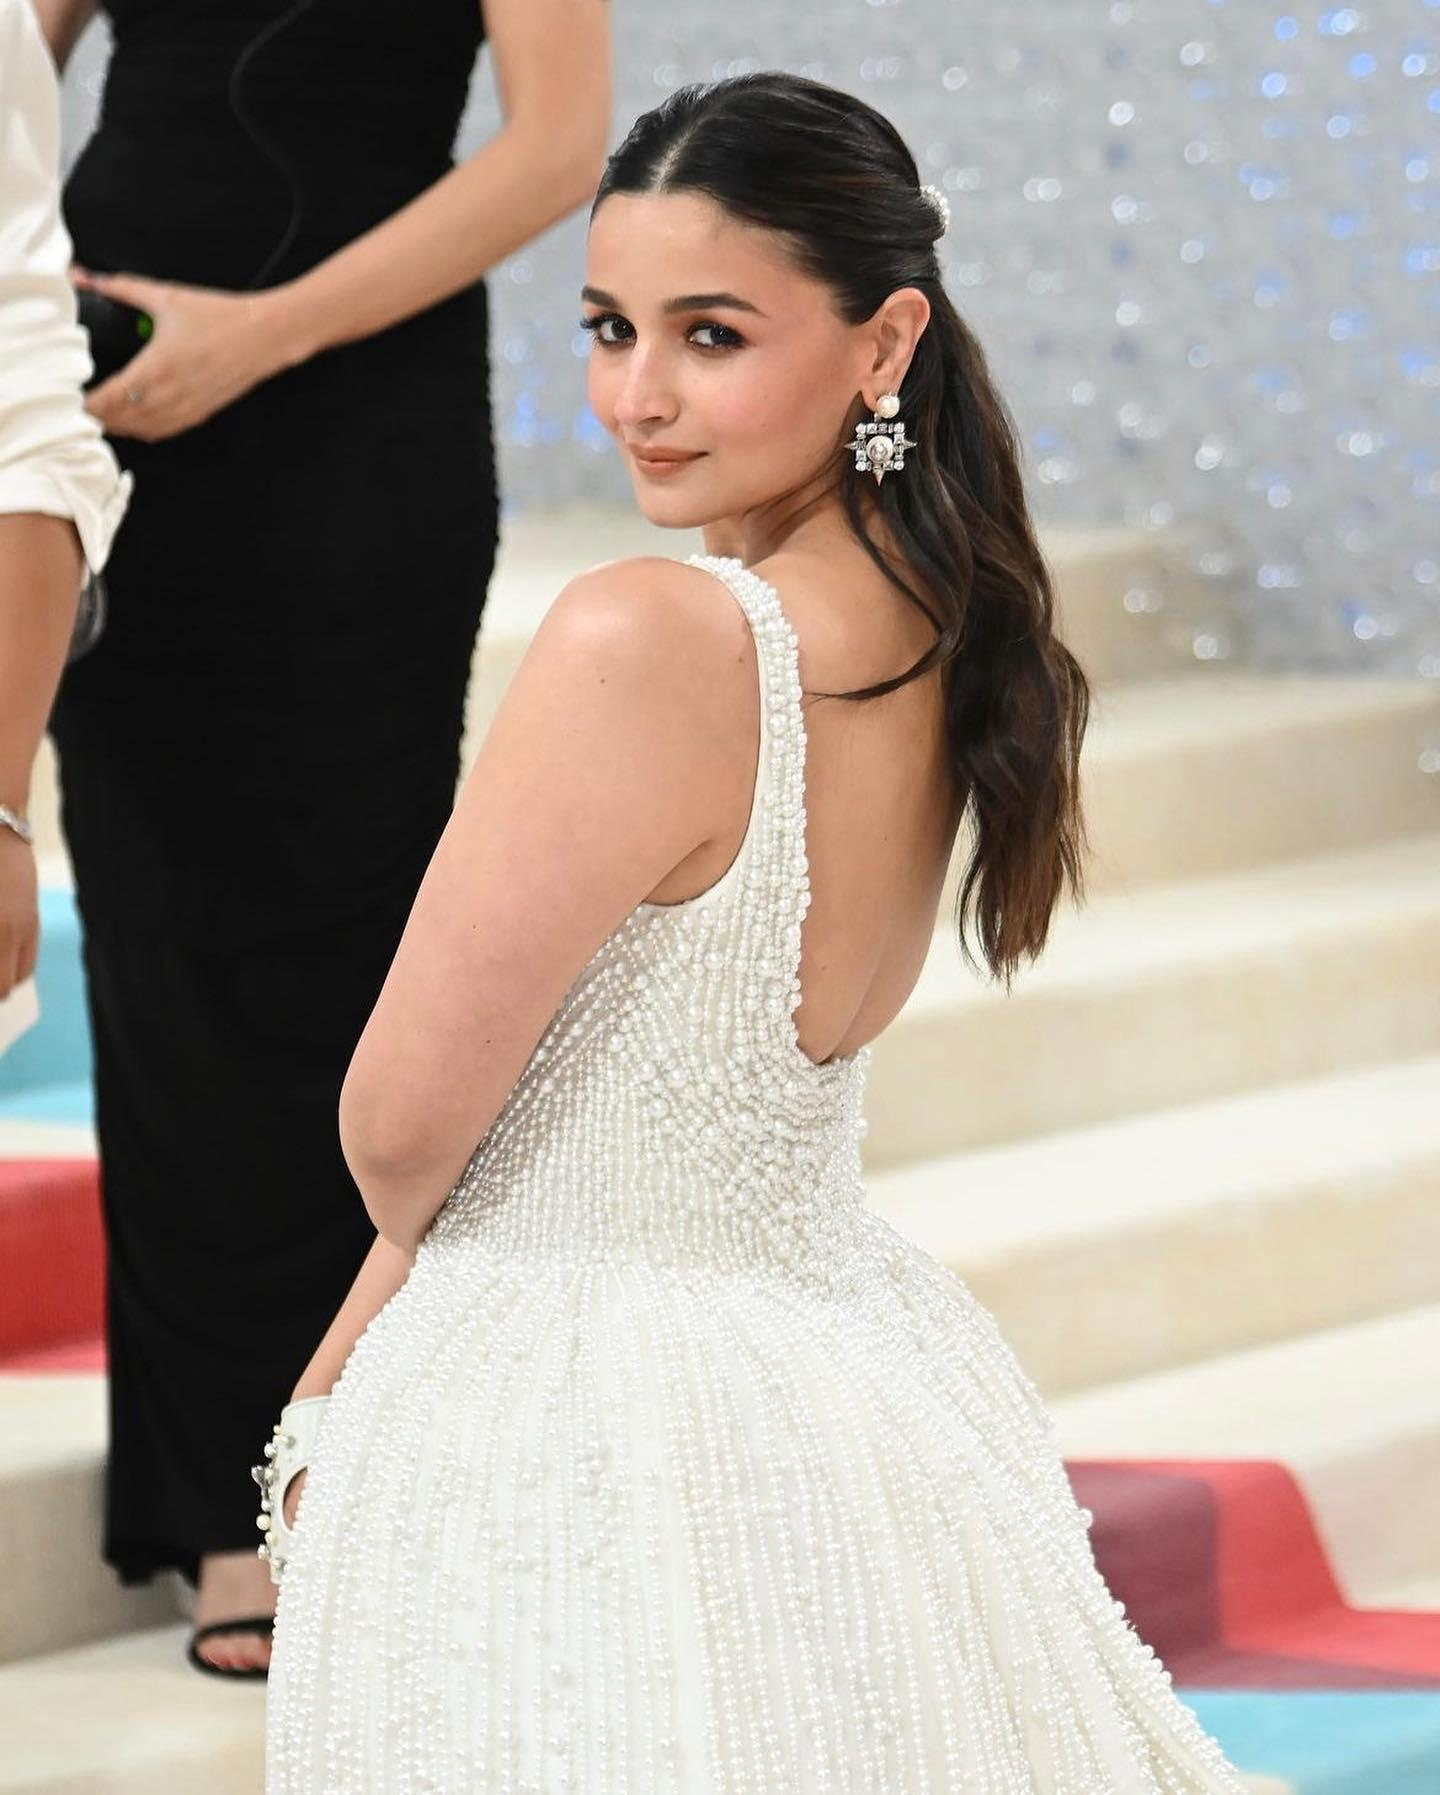 Alia Bhatt Looking Delightful In A White Dress